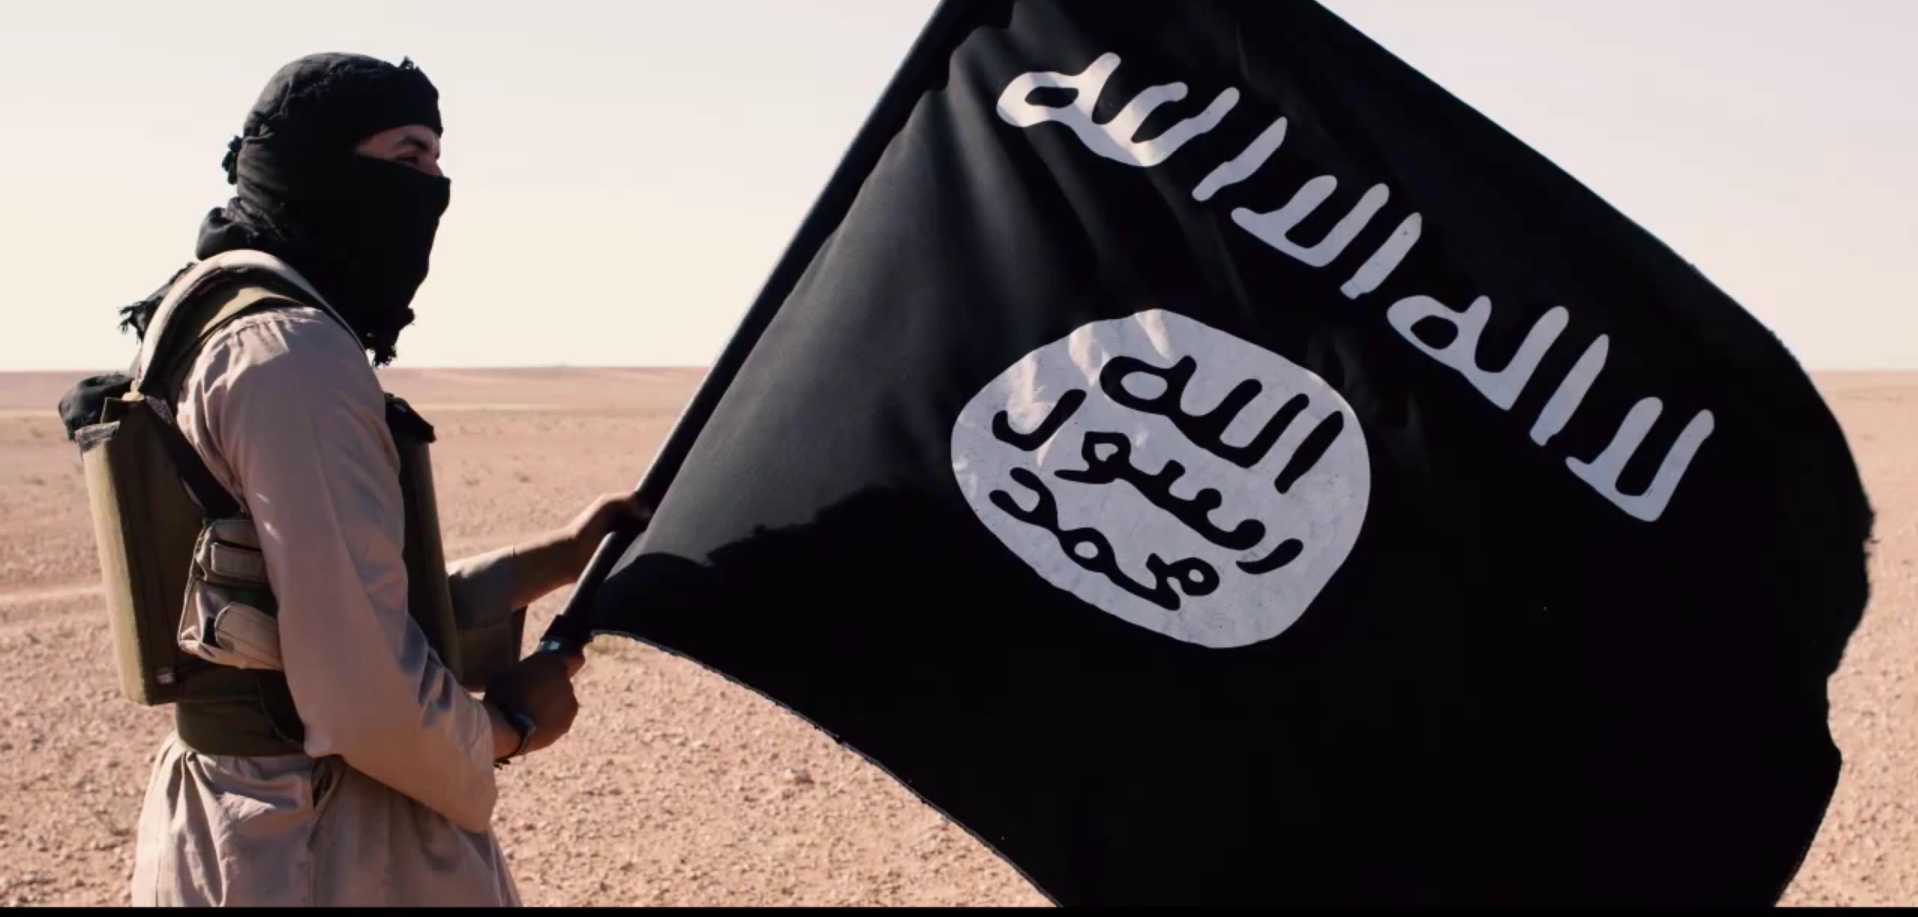 Фото на фоне флага игил. Флаг ИГИЛ. Исламское государство террористическая организация флаг.